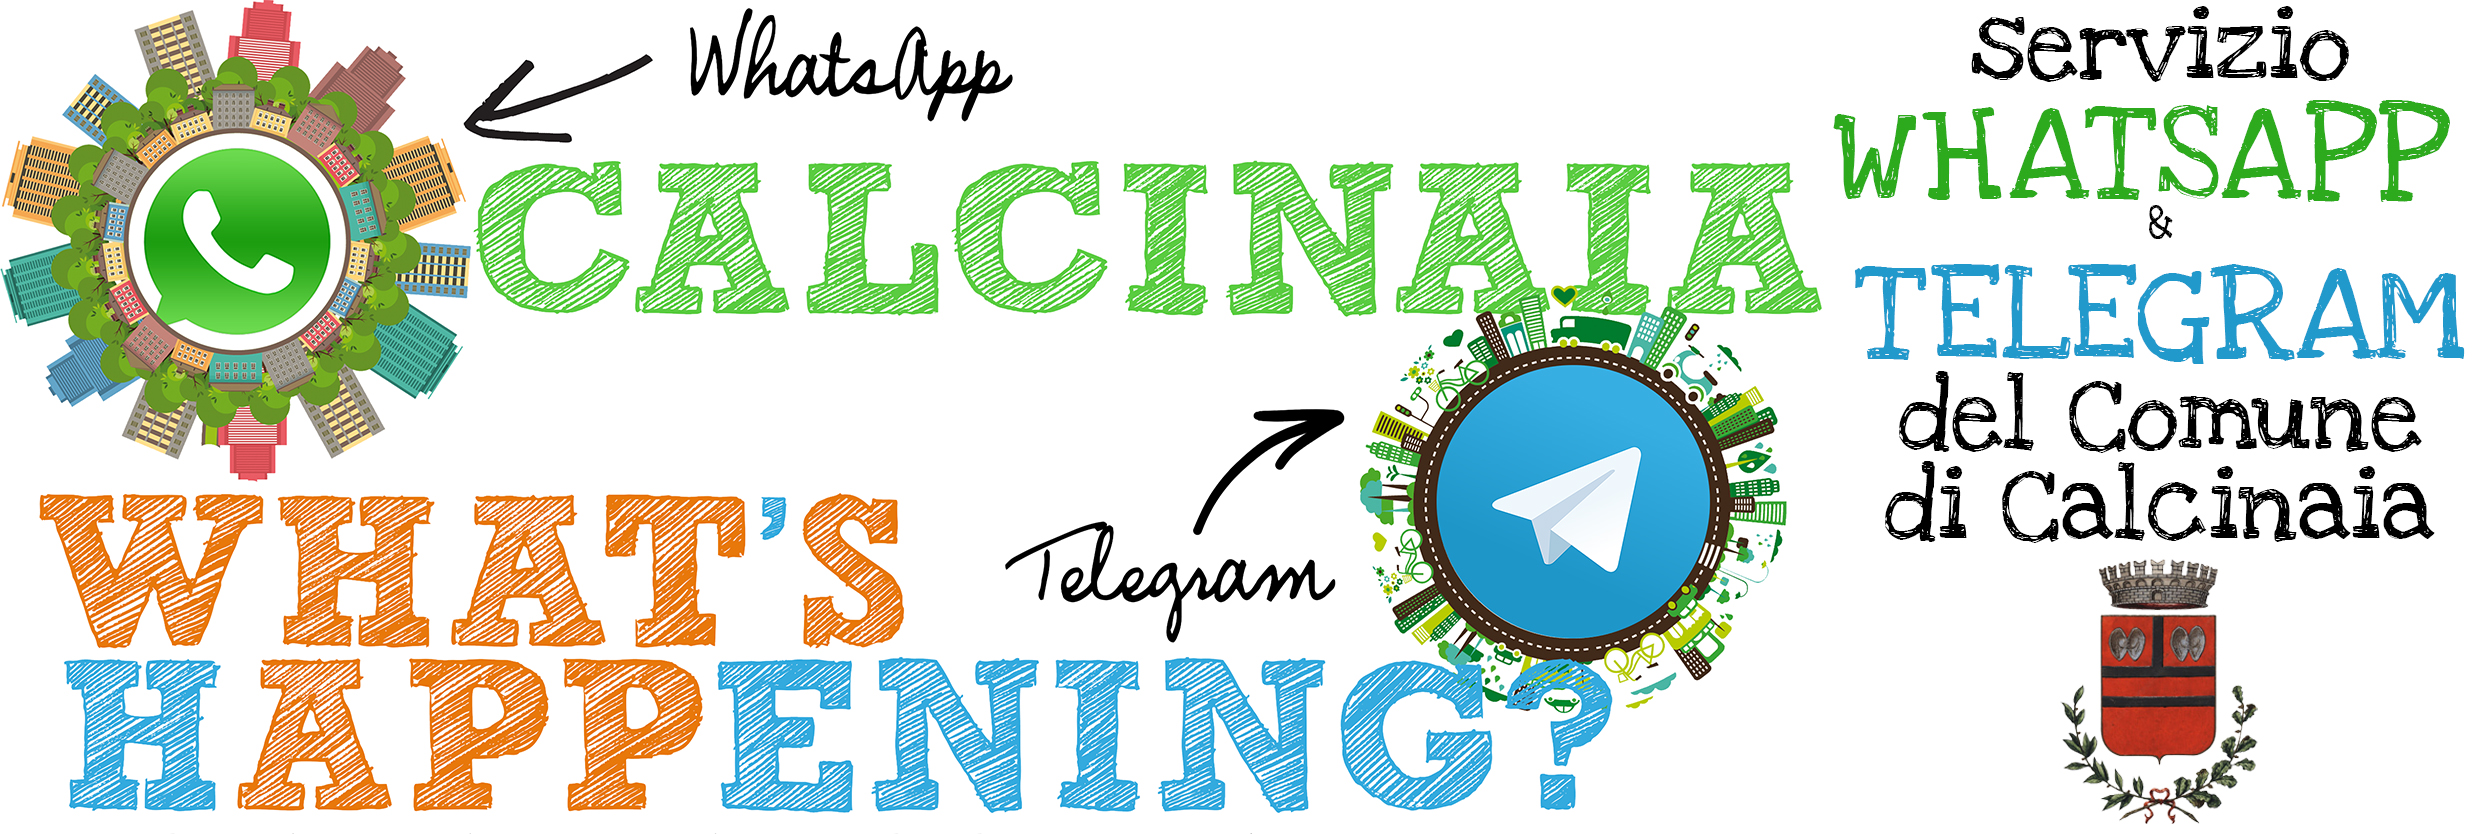 Whatsapp e Telegram